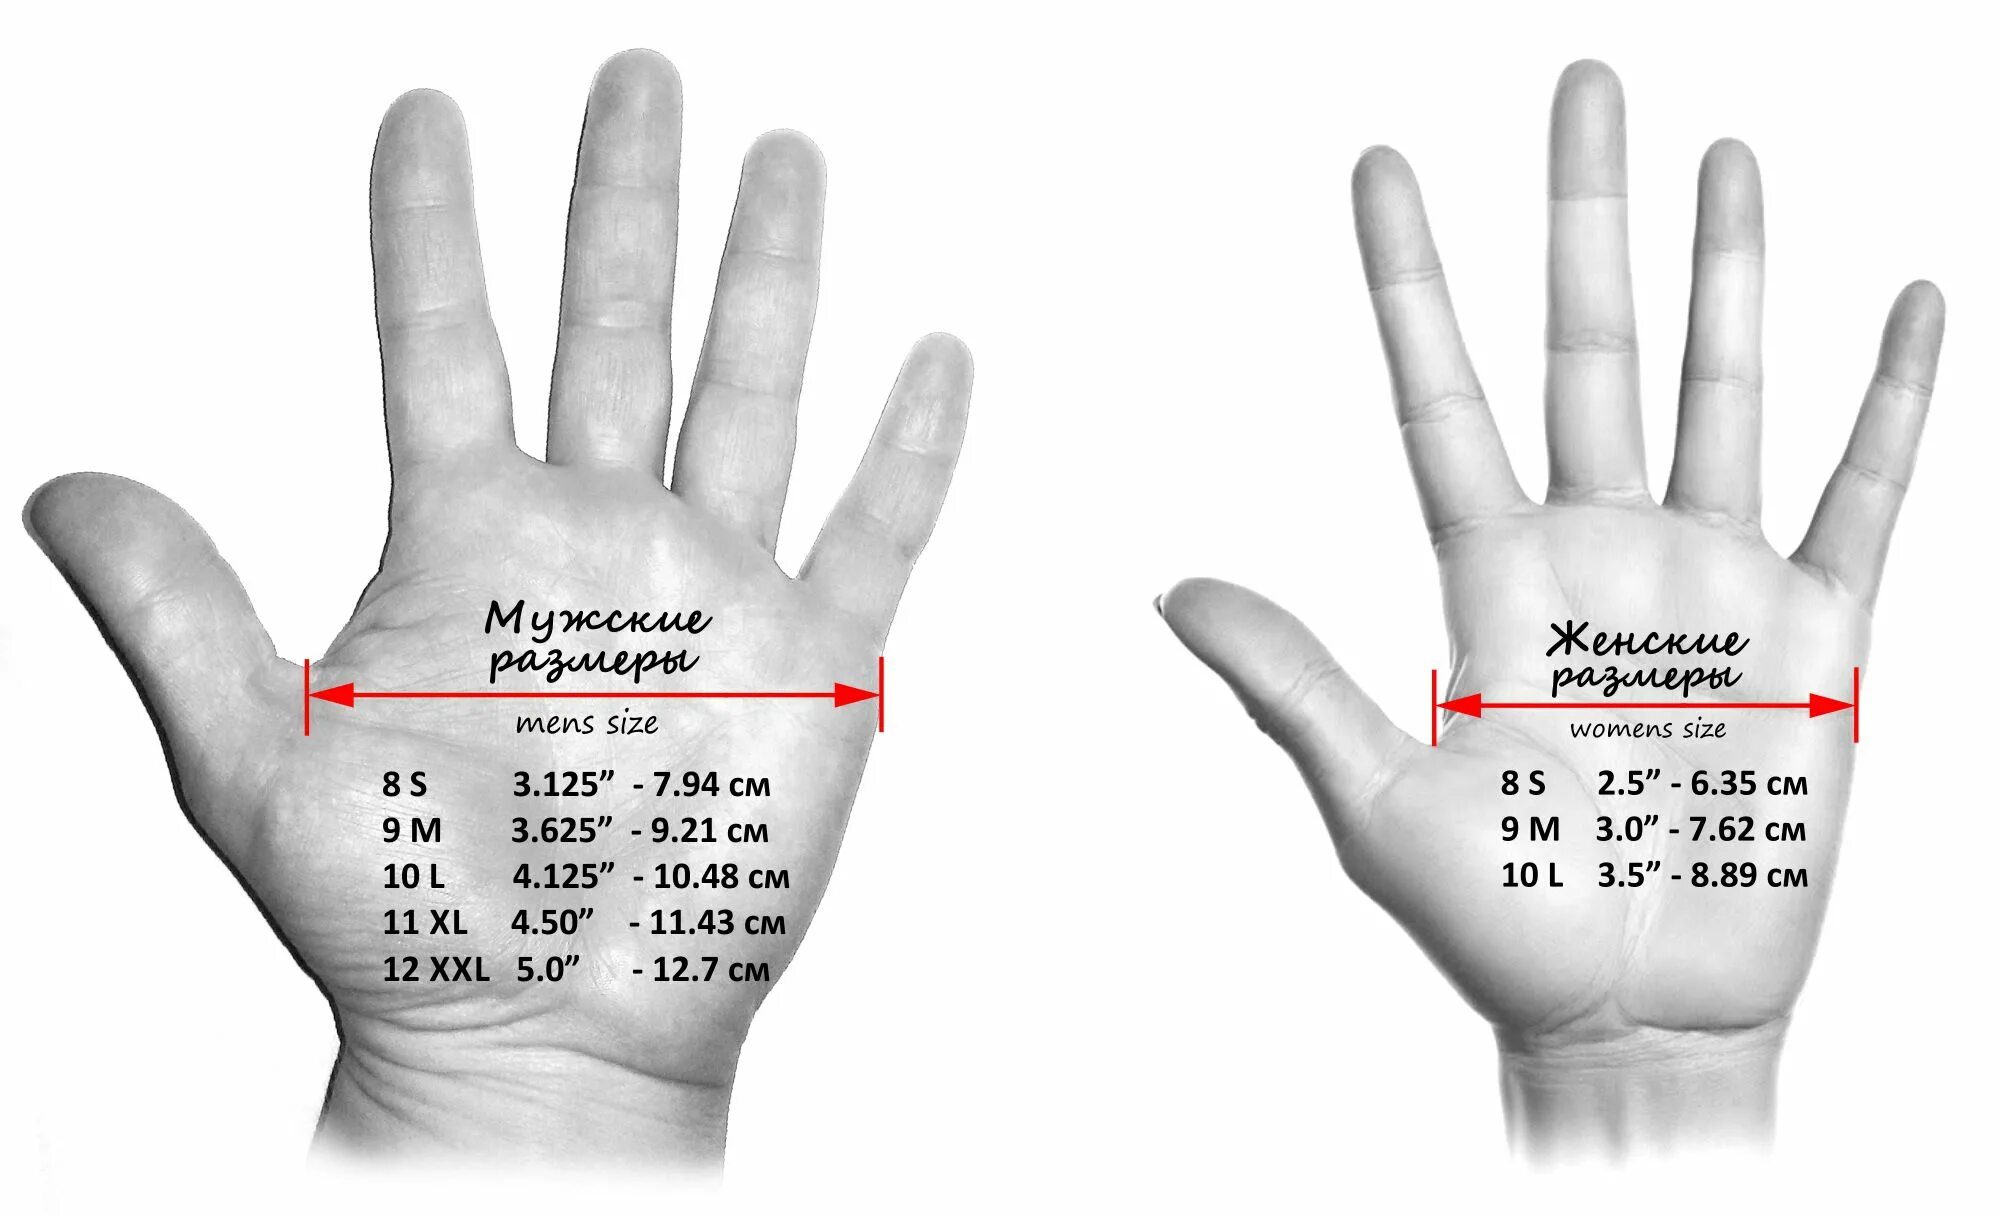 Сколько сантиметров пальцы. Как измеряется обхват ладони для перчаток. Как правильно измерить обхват ладони для размера перчатки. Как узнать размер кисти для перчаток. Как измерить размер ладони для перчаток мужчин.